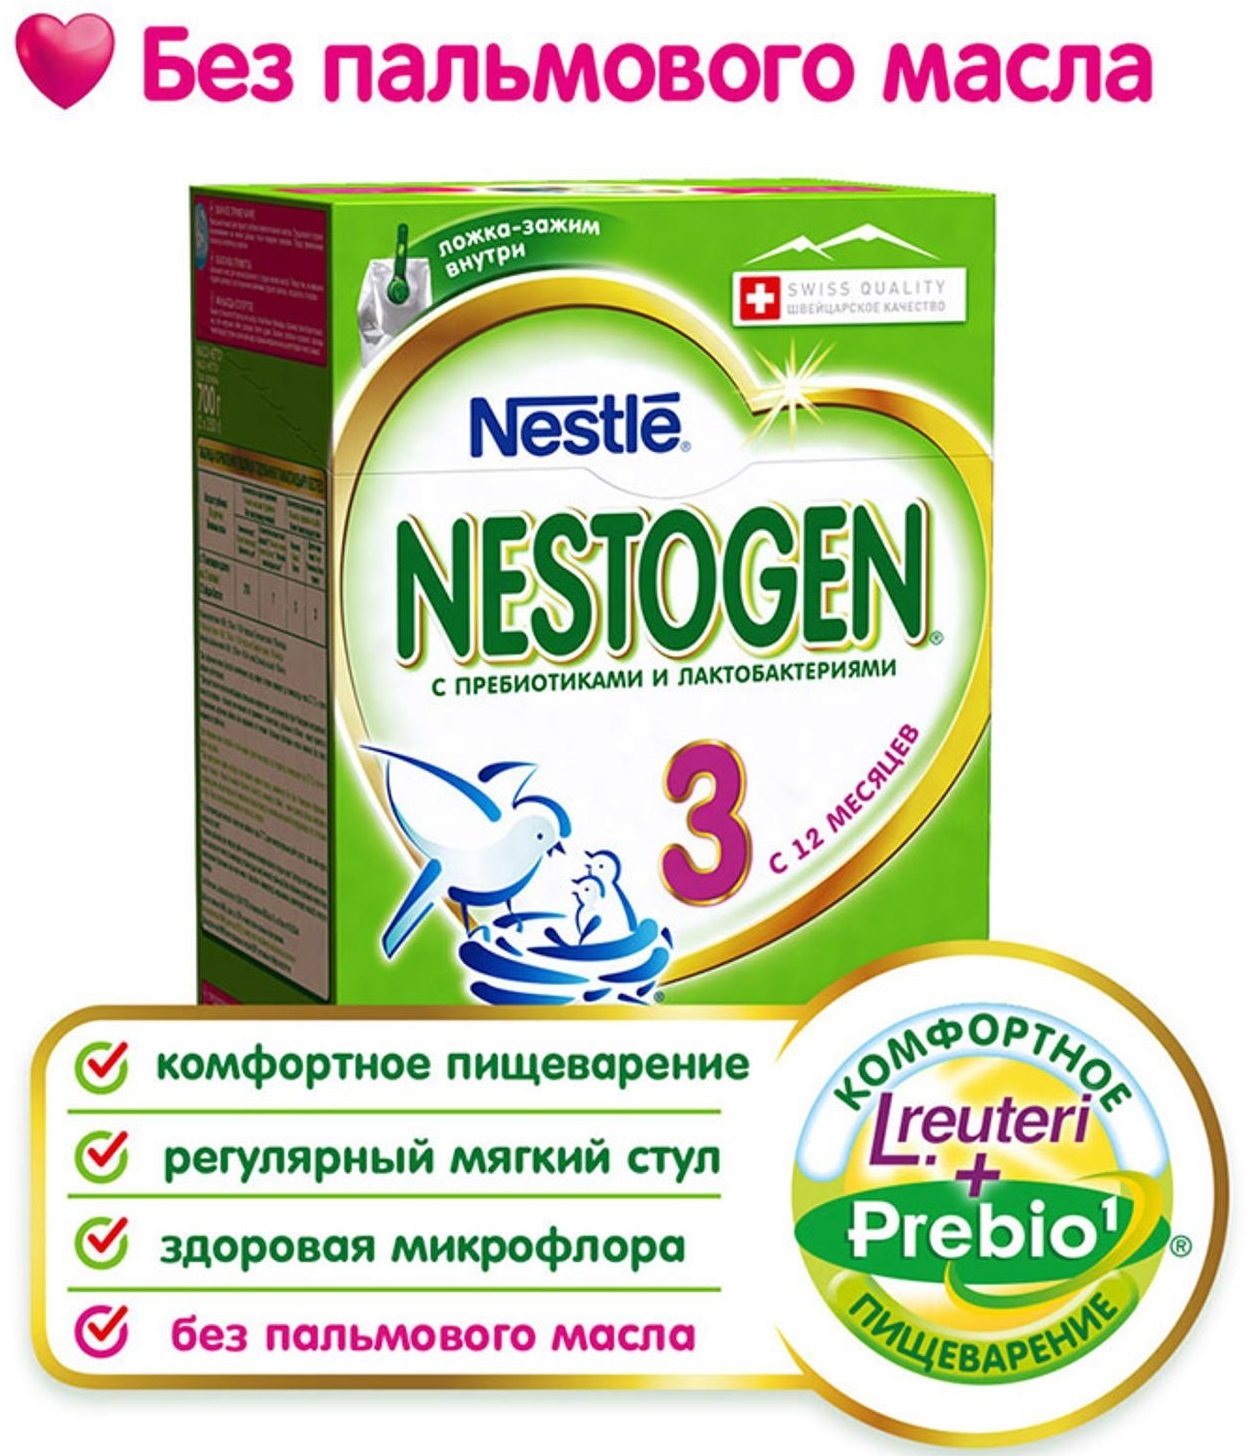 Смесь молочная Нестожен (Nestogen) №4 (с 18 мес.) 350г с пребиотиками